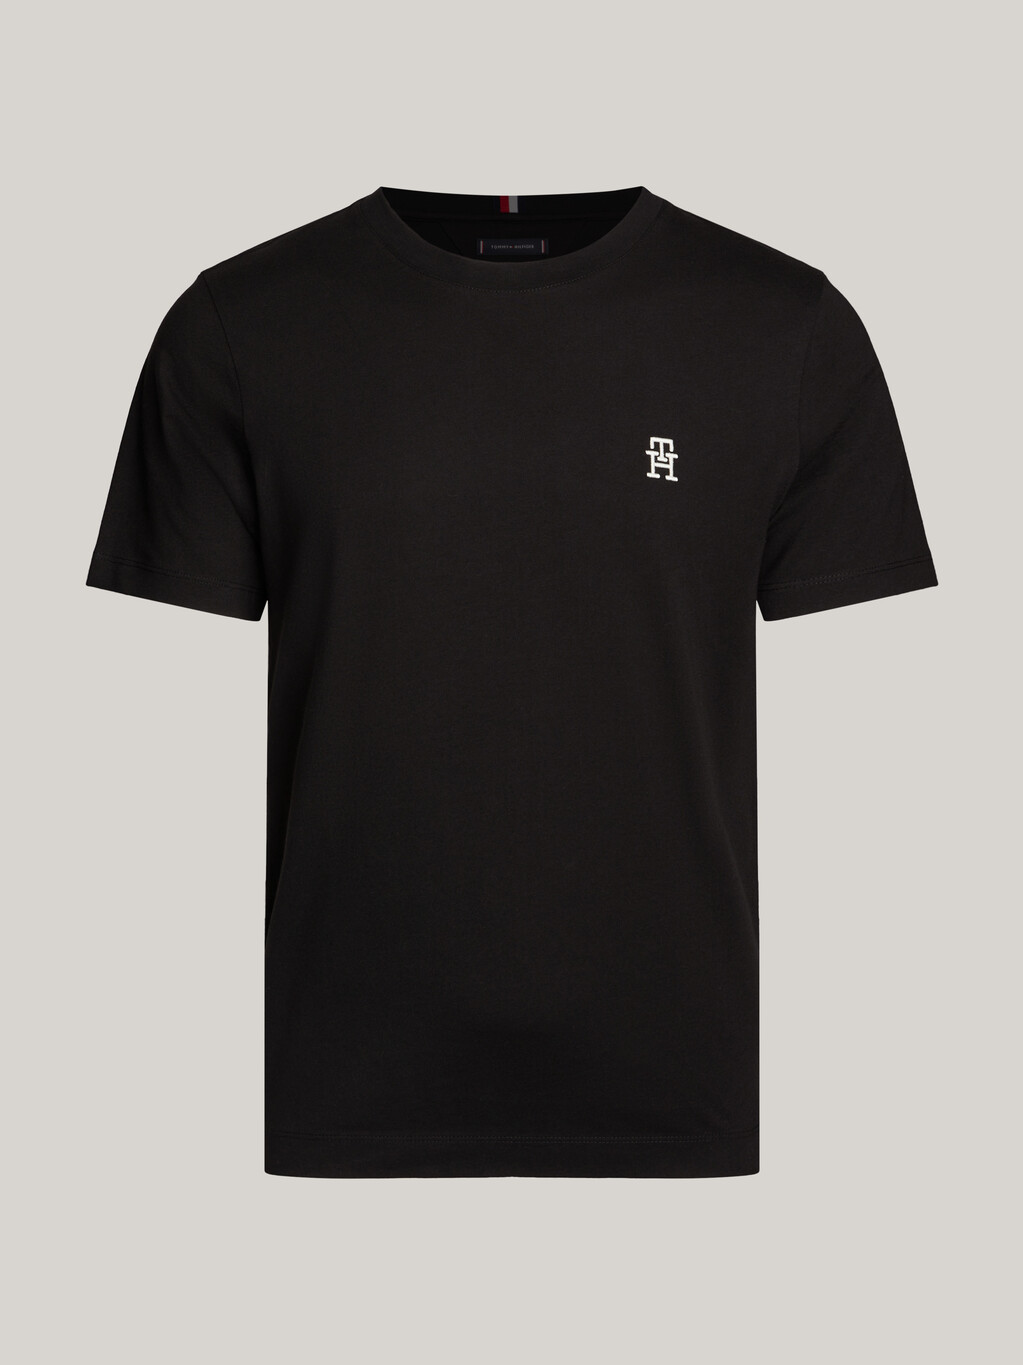 TH Monogram 標誌 T 恤, Black, hi-res